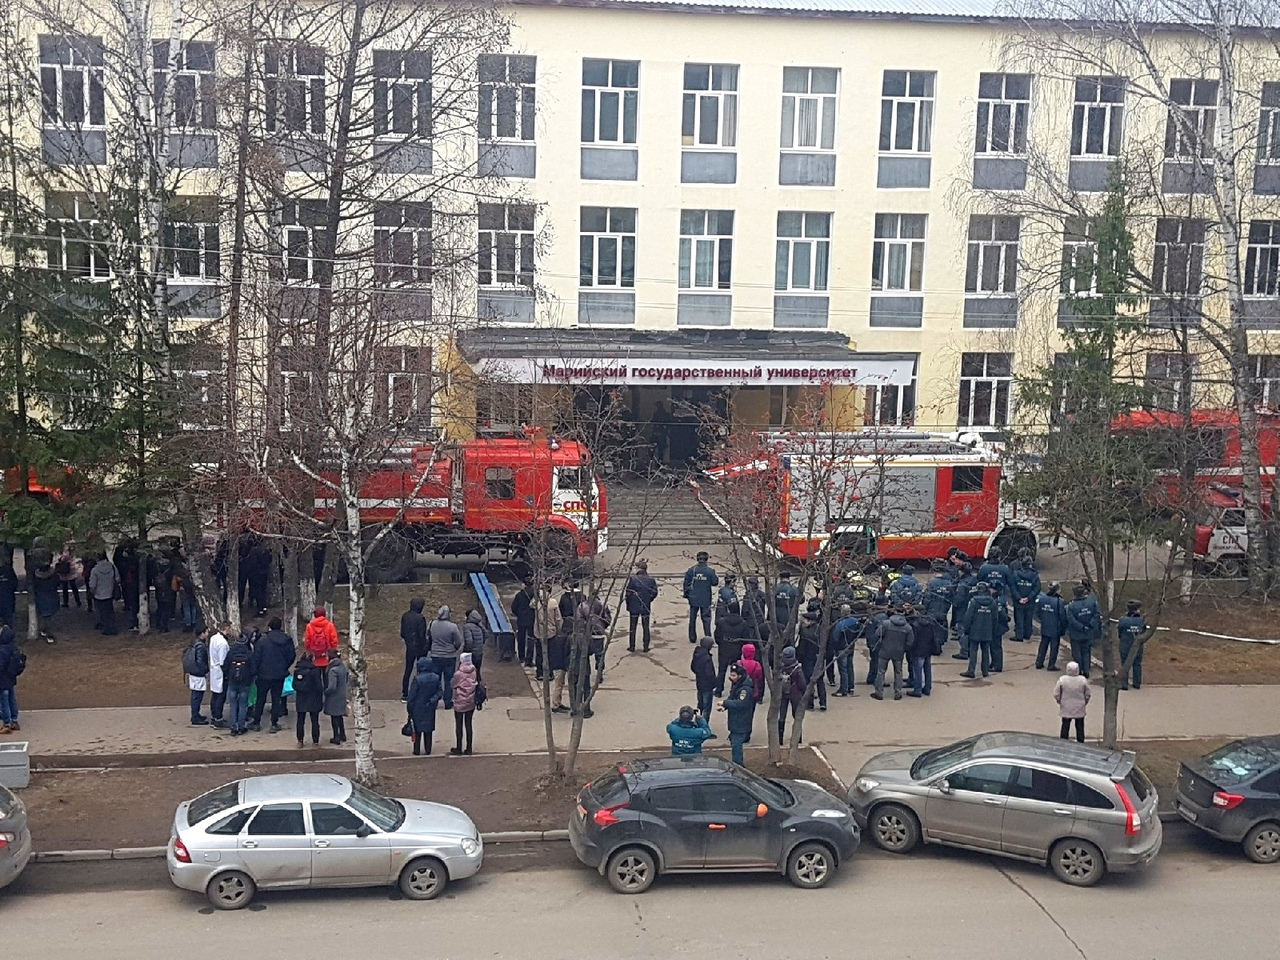 «Мы в панике побежали к выходу»: в Йошкар-Оле эвакуировали студентов университета